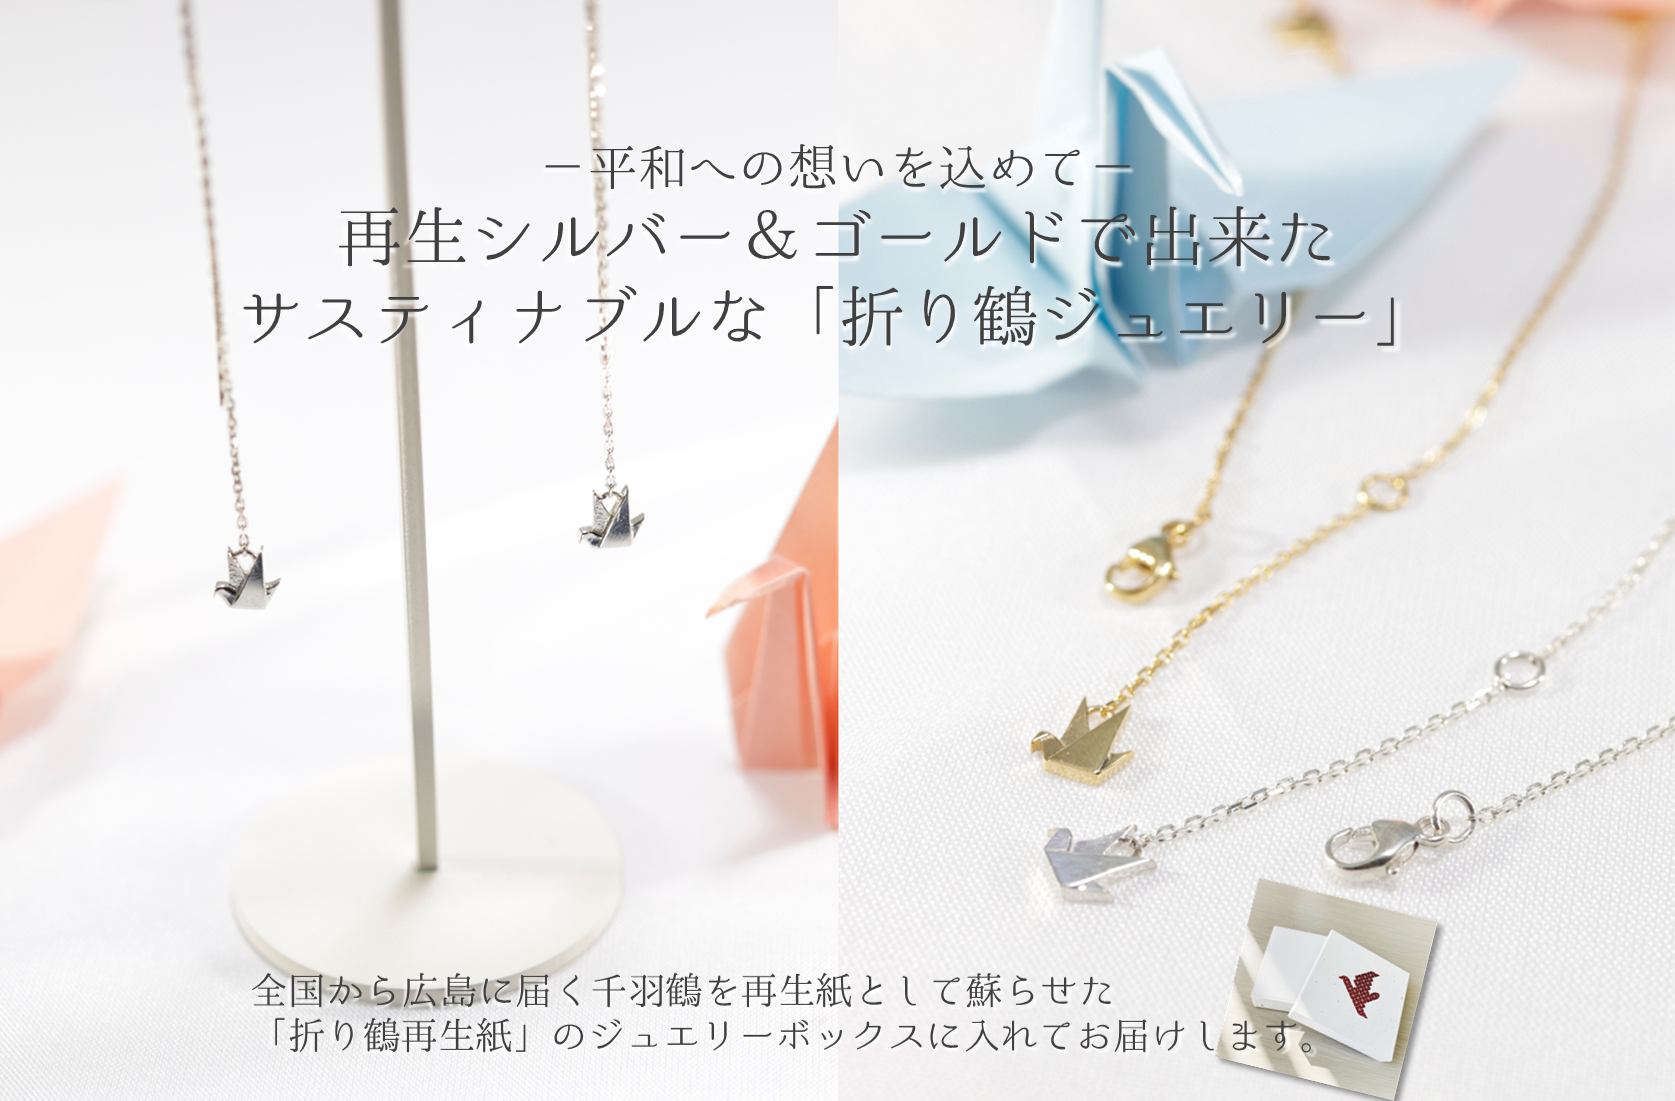 【新商品】再生金属で出来たサスティナブルな「折り鶴ジュエリー」